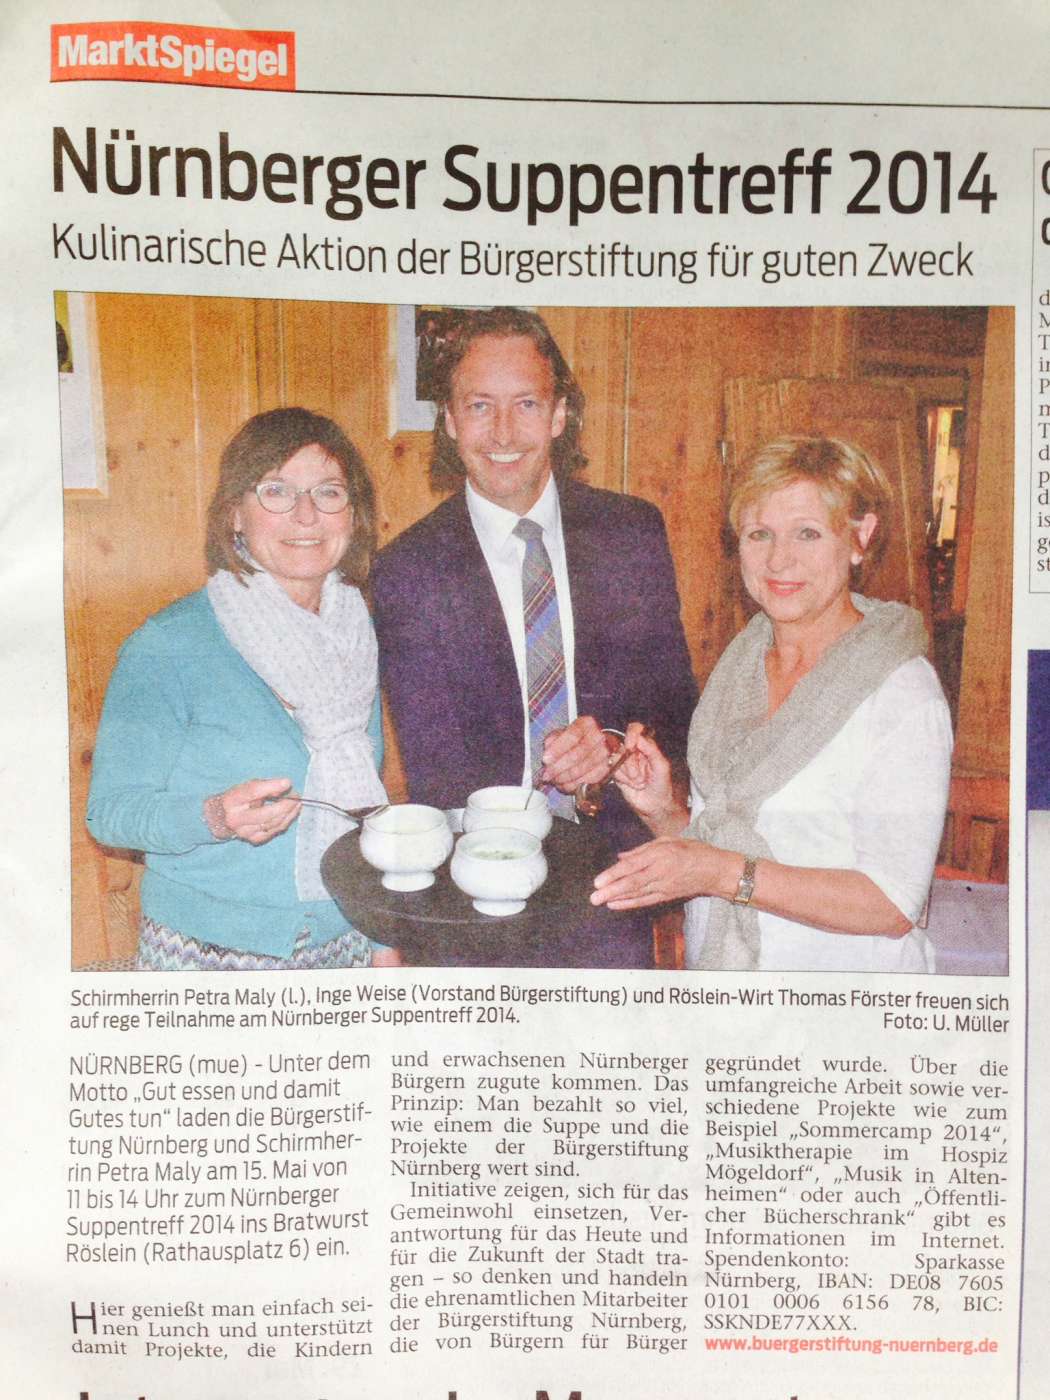 Presse Bratwurst Roeslein Marktspiegel Mai 2014